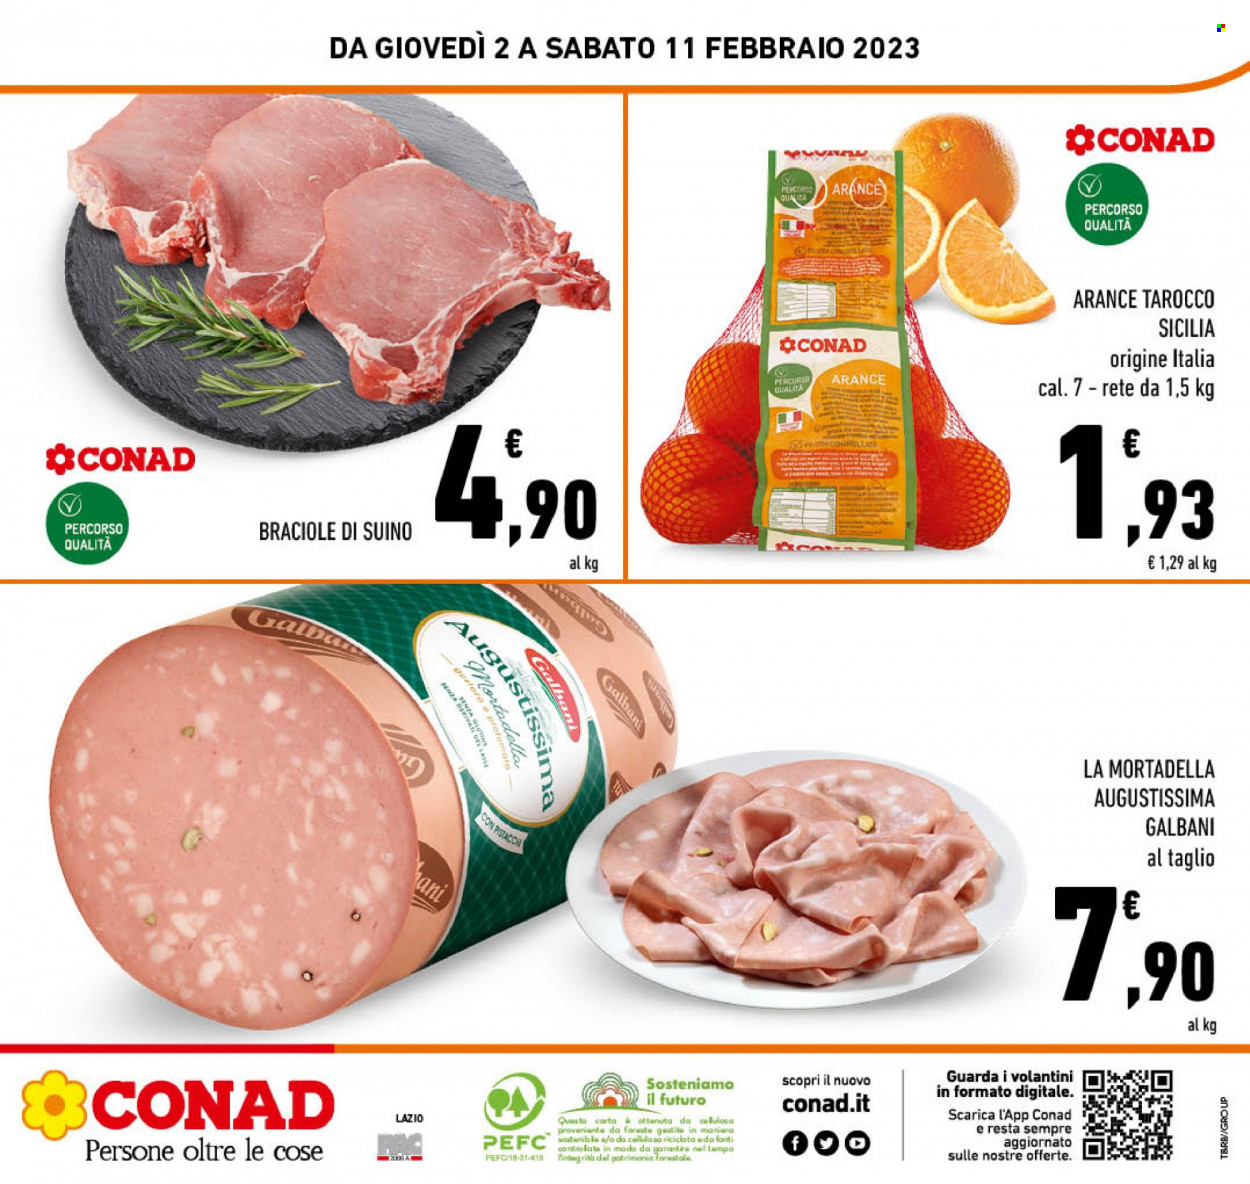 thumbnail - Volantino Conad - 2/2/2023 - 11/2/2023 - Prodotti in offerta - arance, braciole di maiale, suino, Galbani, mortadella. Pagina 24.